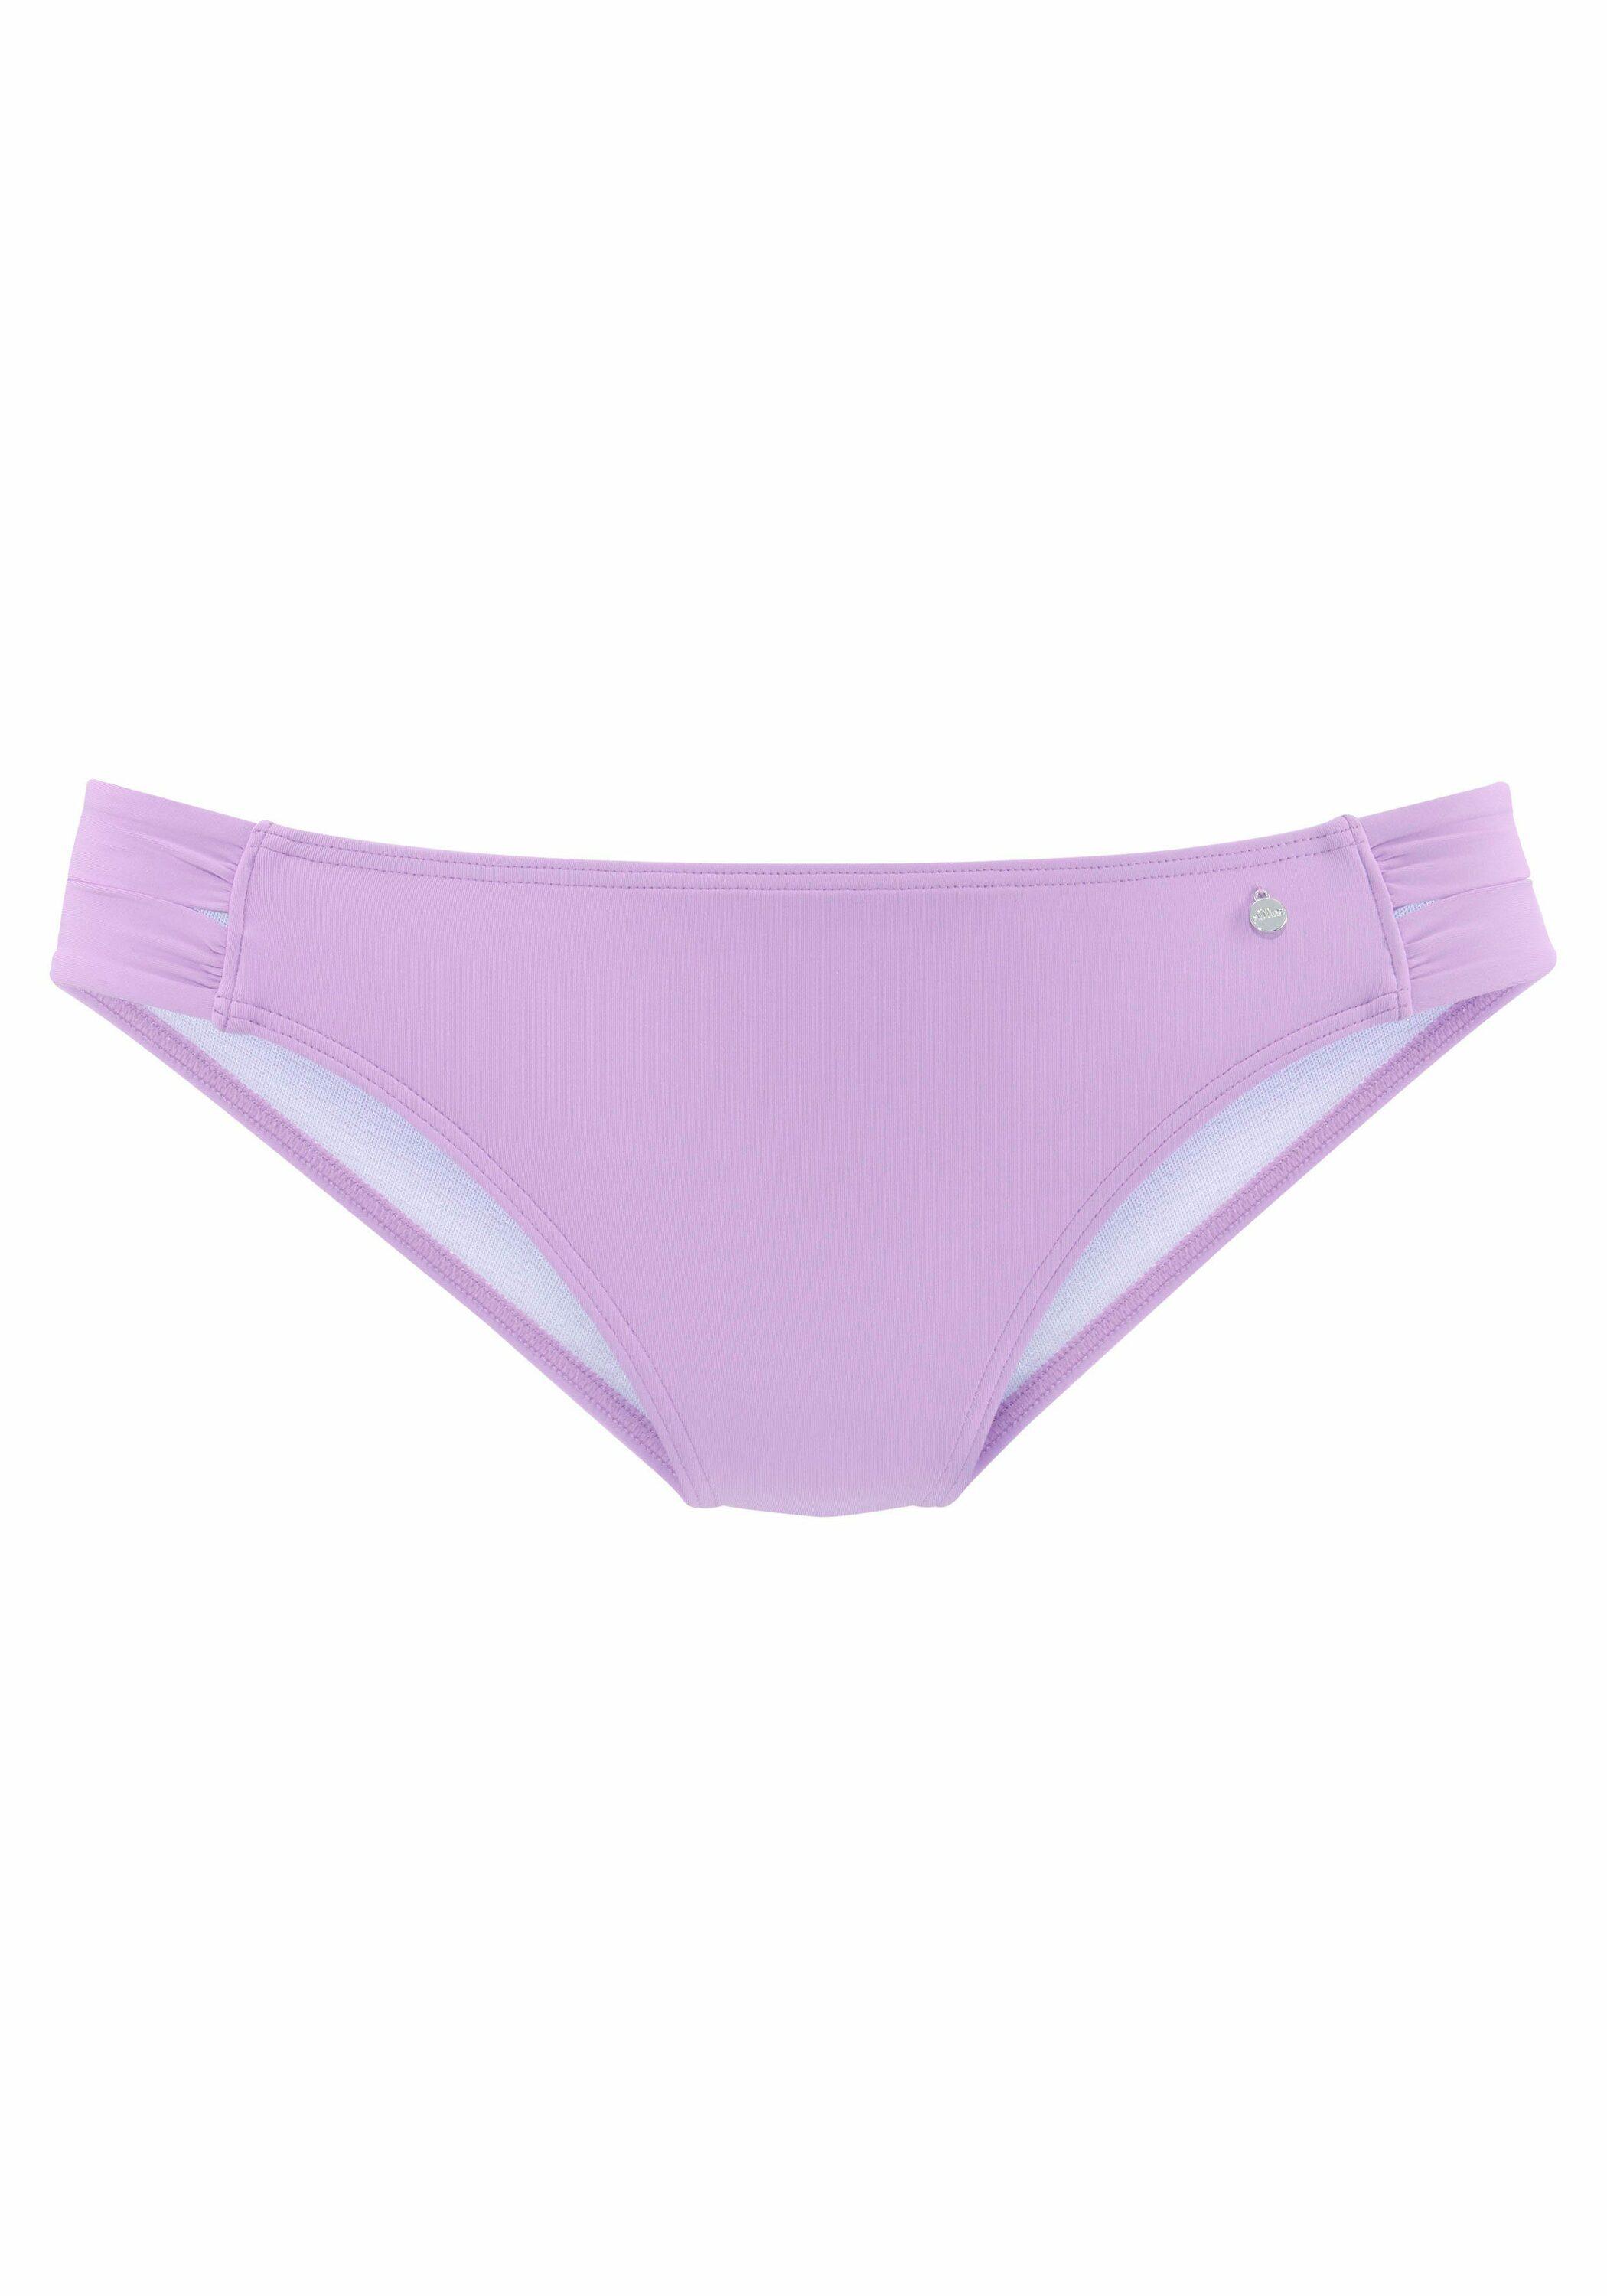 Online im Shop Bikini SportScheck von lila kaufen Damen Hose S.OLIVER